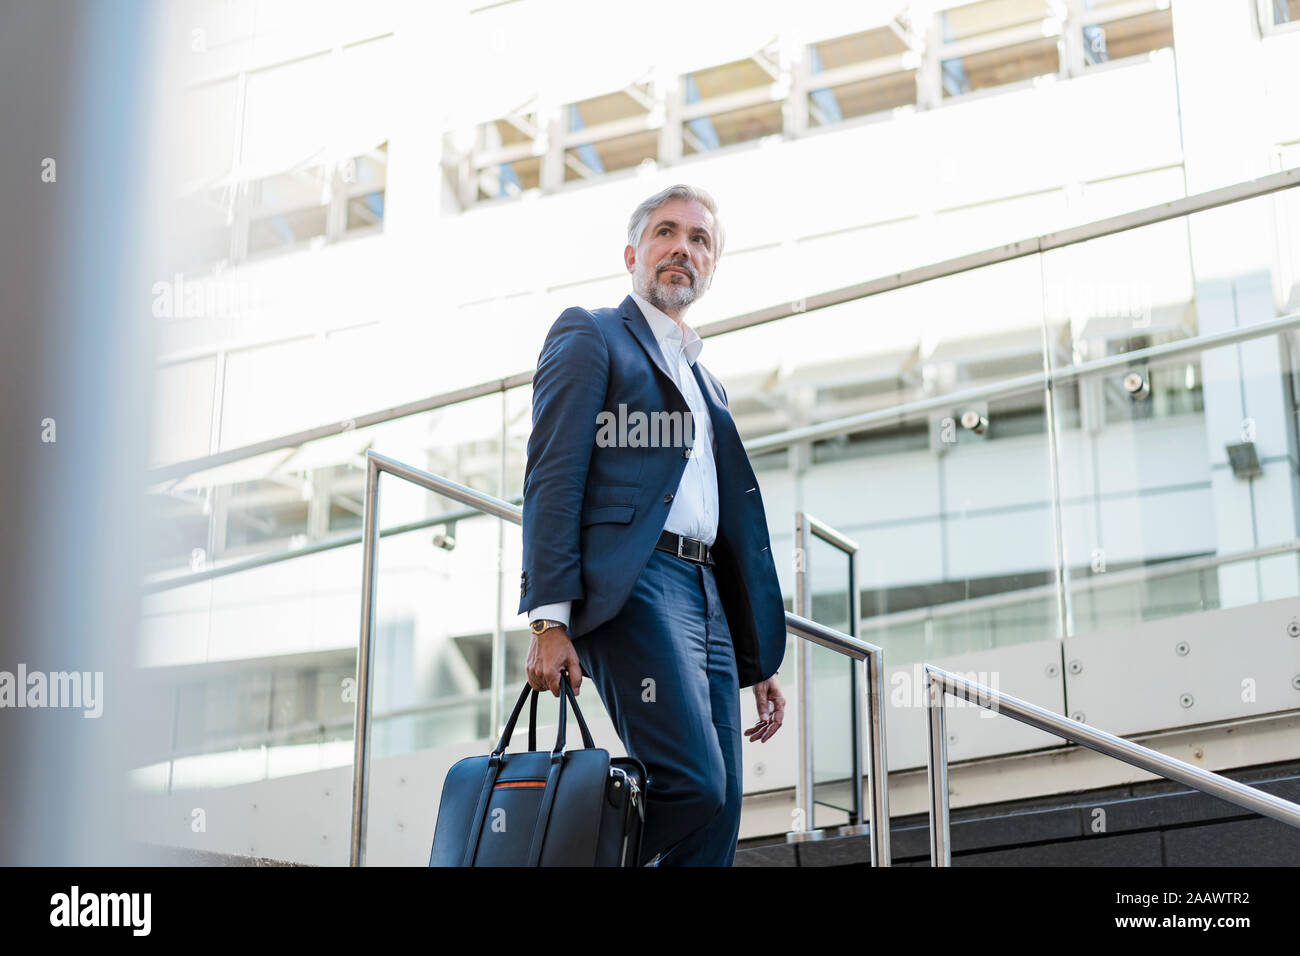 Mature businessman holding bag descendant des escaliers dans la ville Banque D'Images